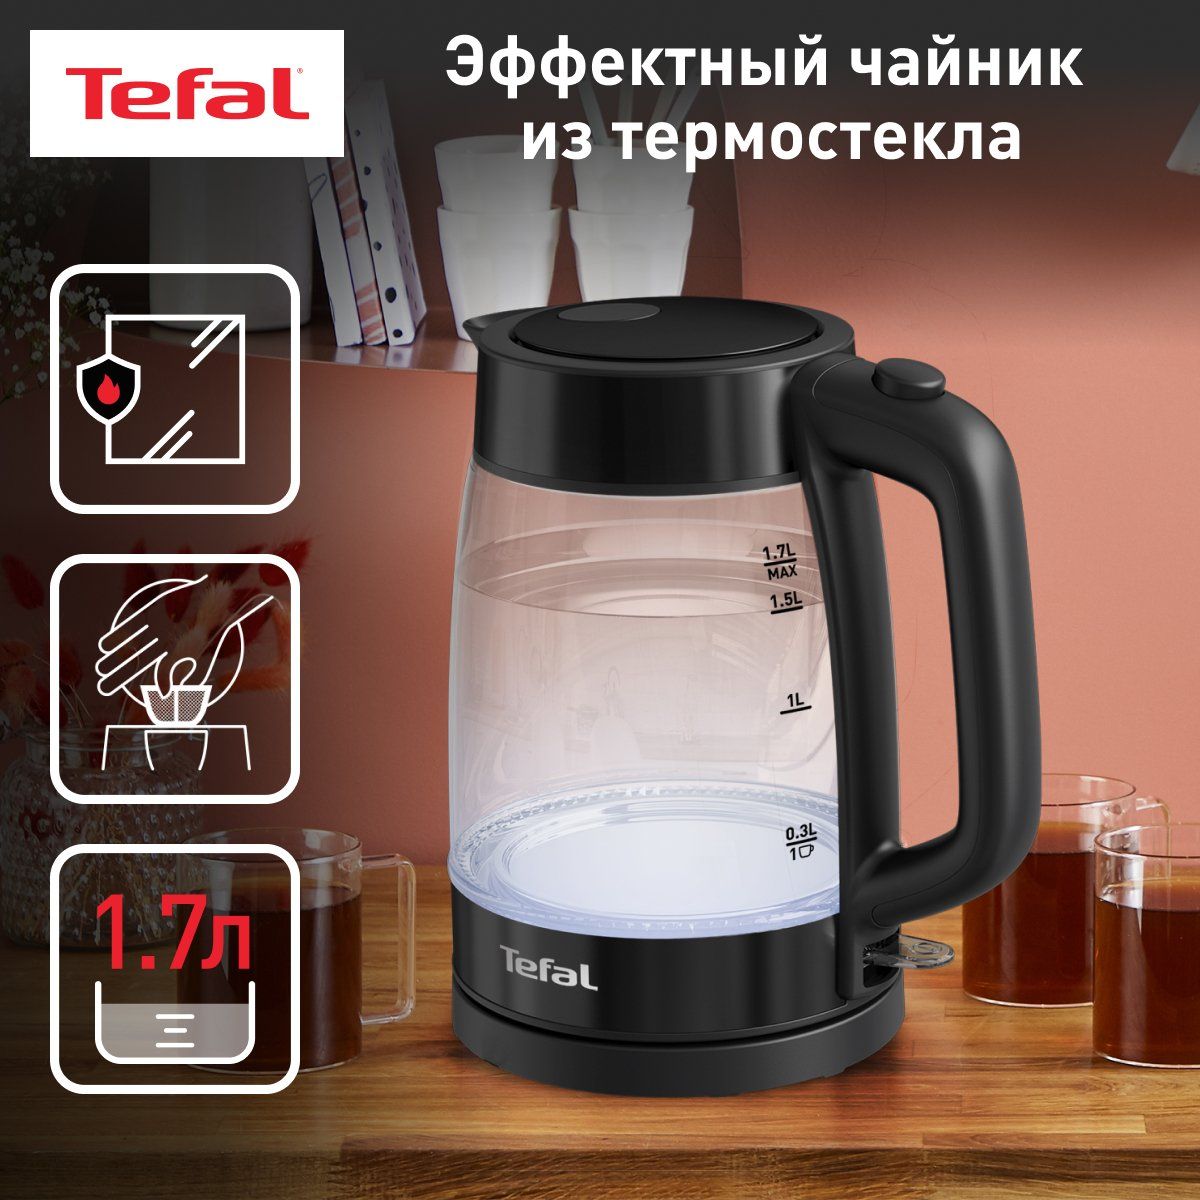 Чайник электрический Tefal Glass Kettle KI840830, 1.7 л, черный, купить в Москве, цены в интернет-магазинах на Мегамаркет